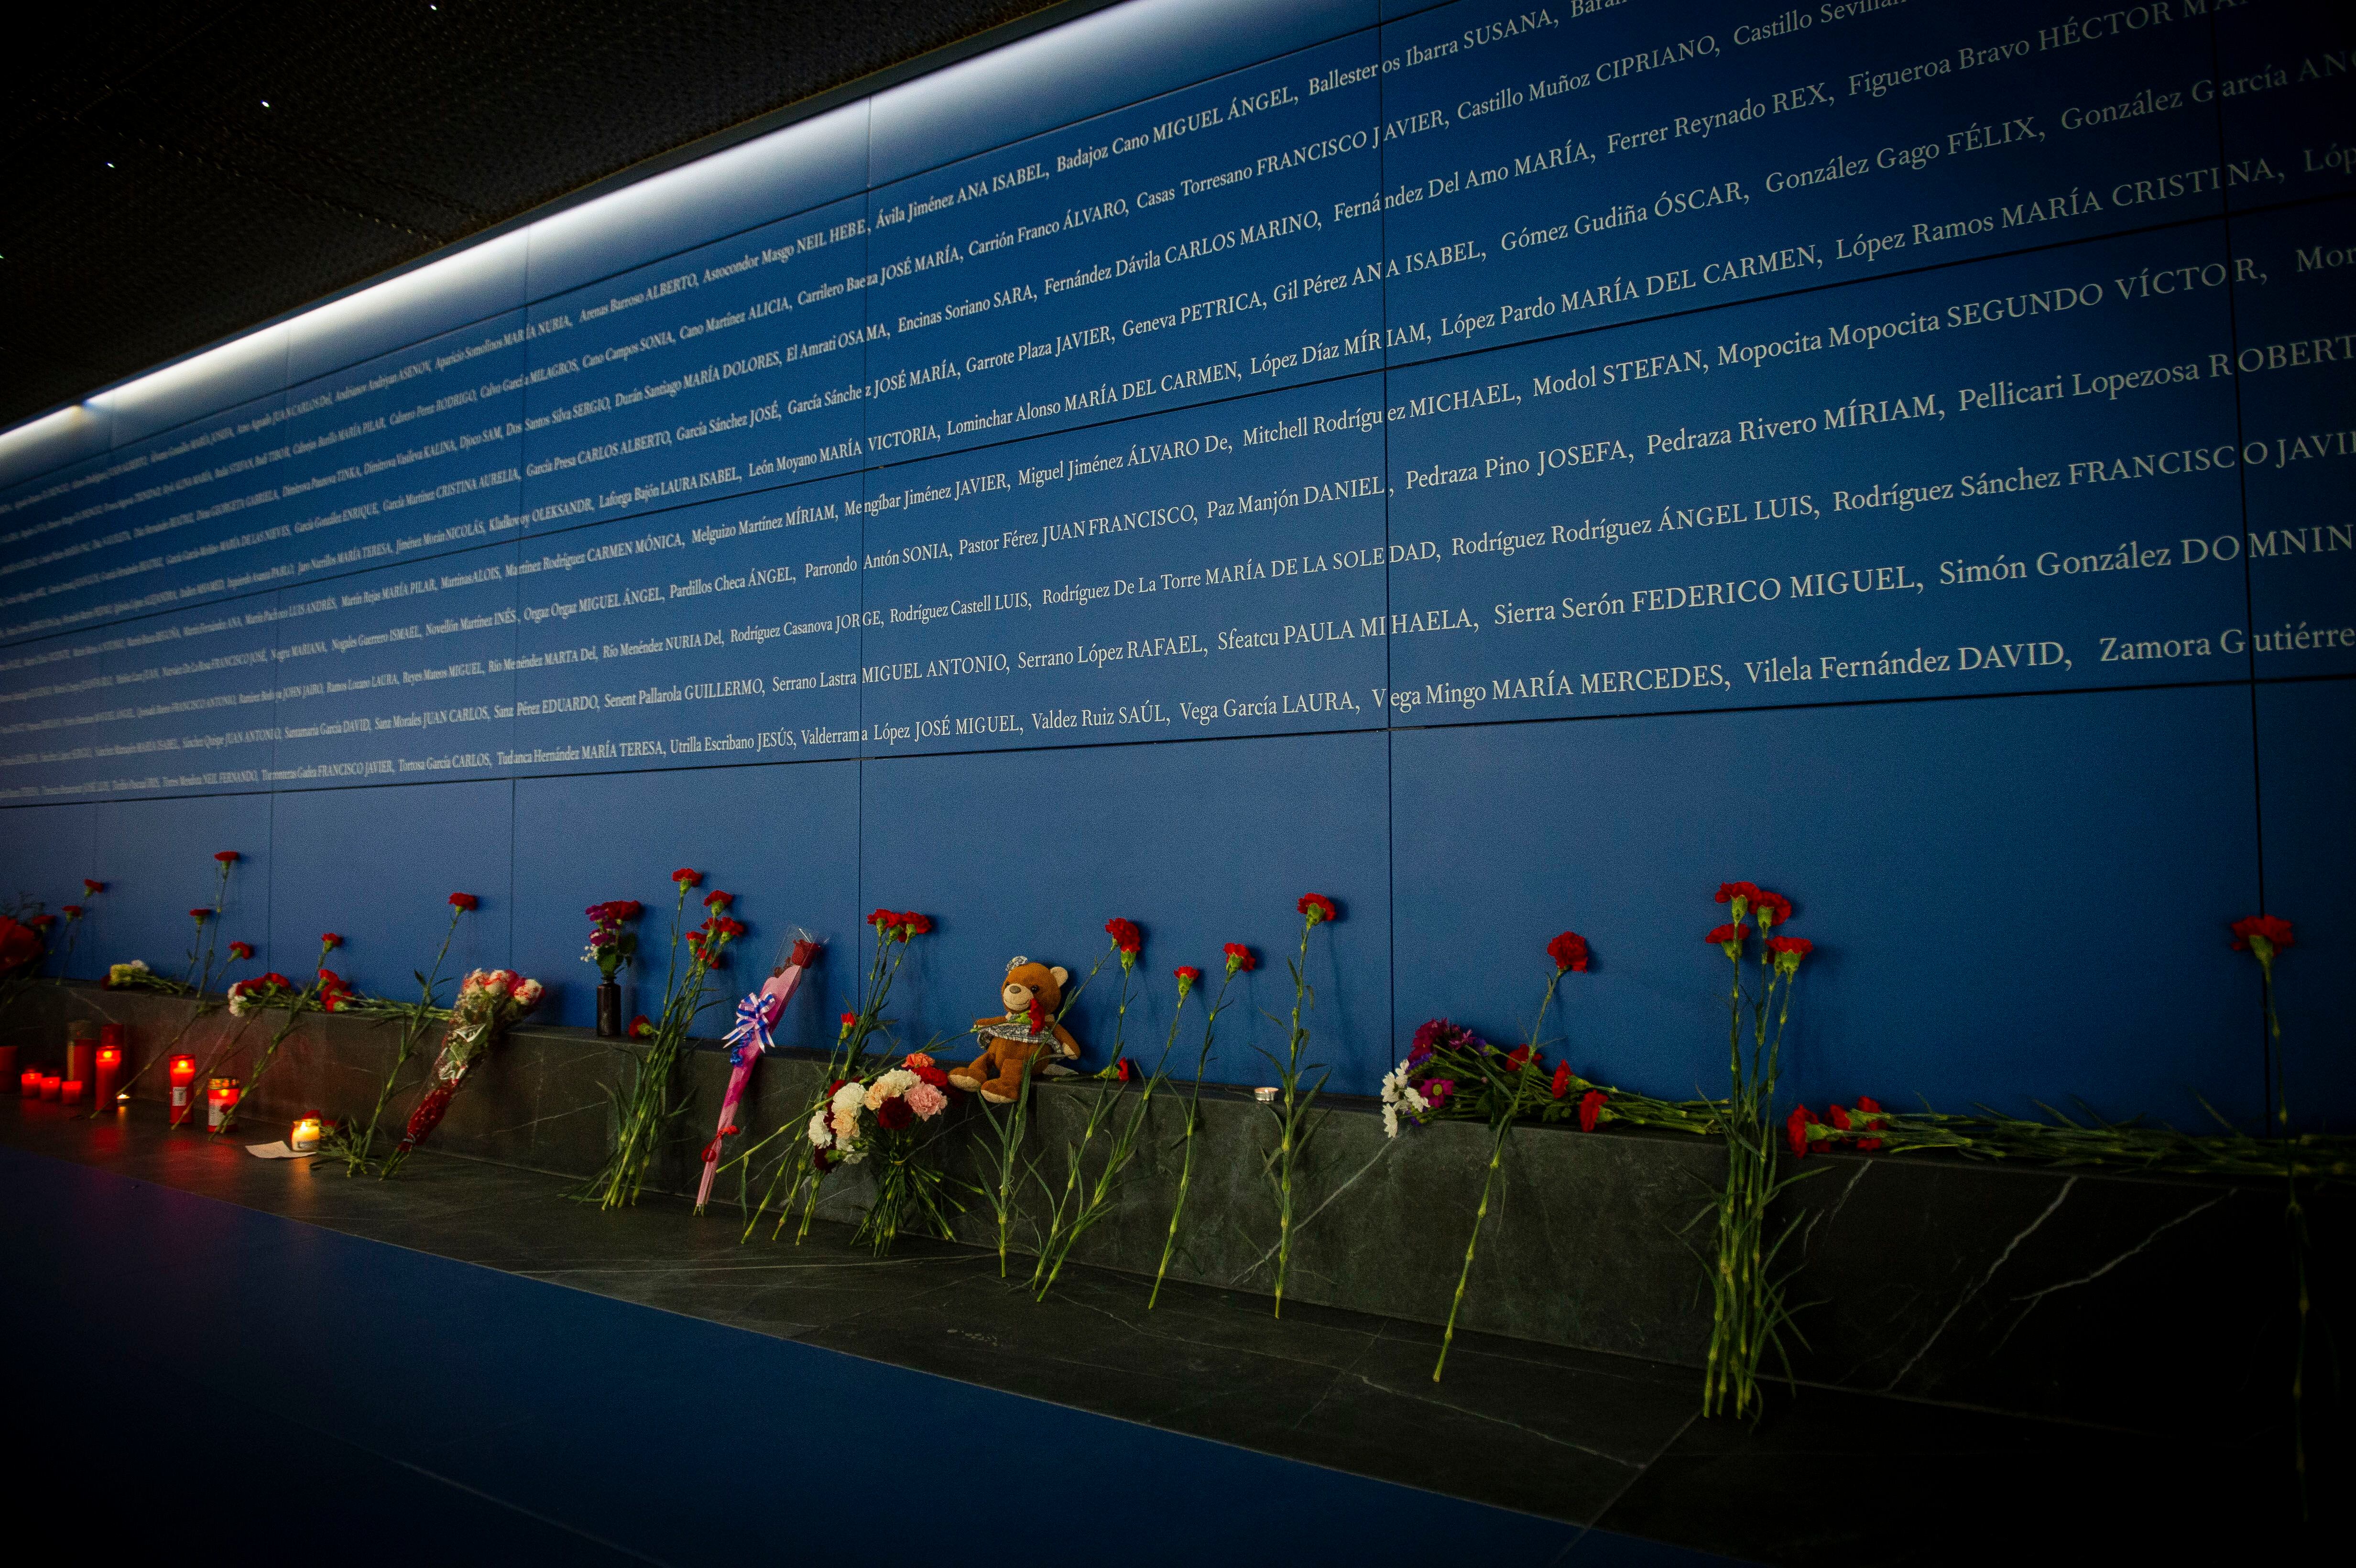 El memorial a las víctimas del 11-M, inaugurado recientemente en la estación de Atocha.